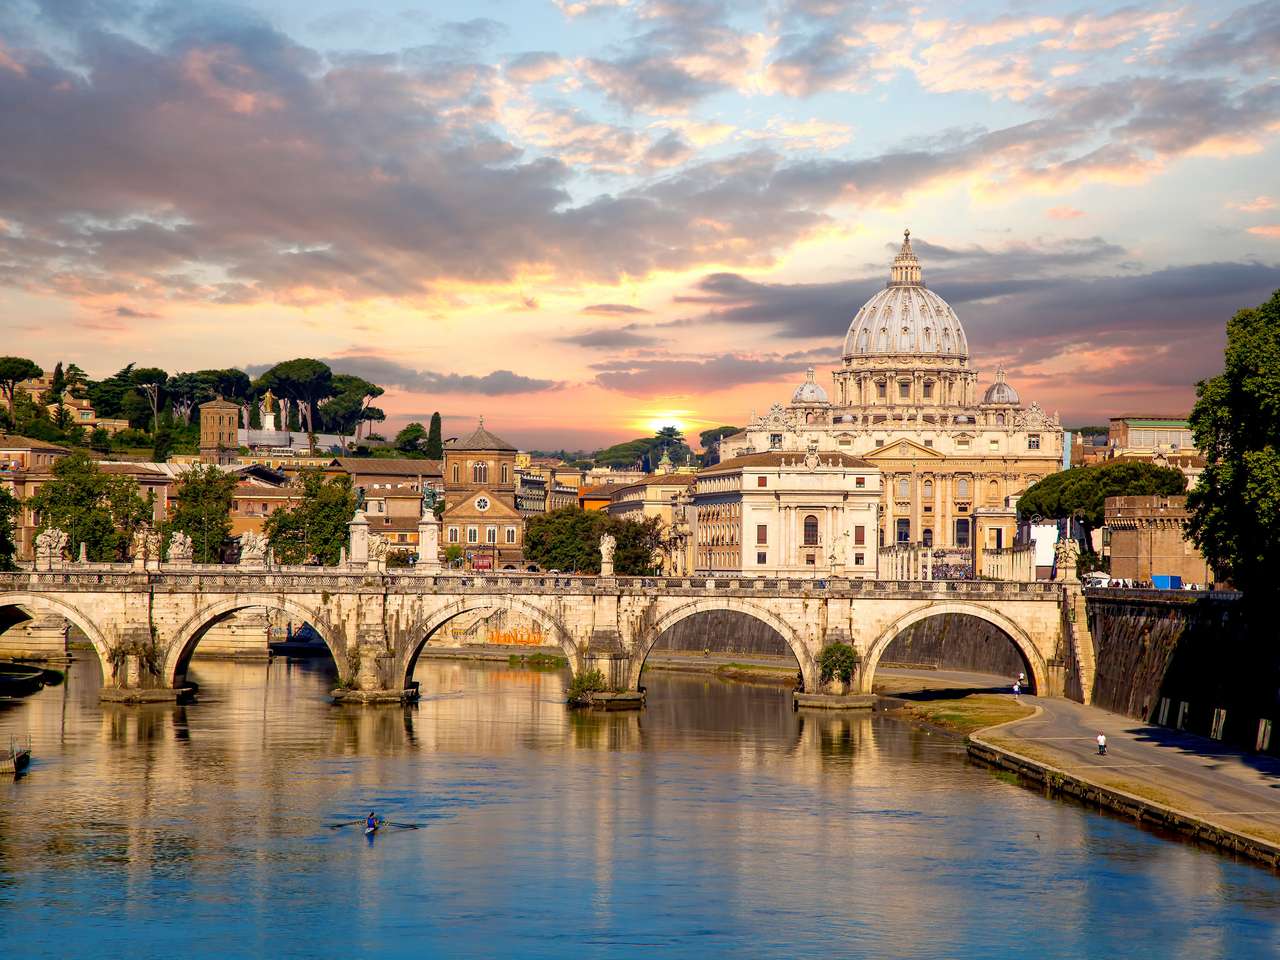 Basilica di San Pietro mit Brücke im Vatikan, Rom, Italien Online-Puzzle